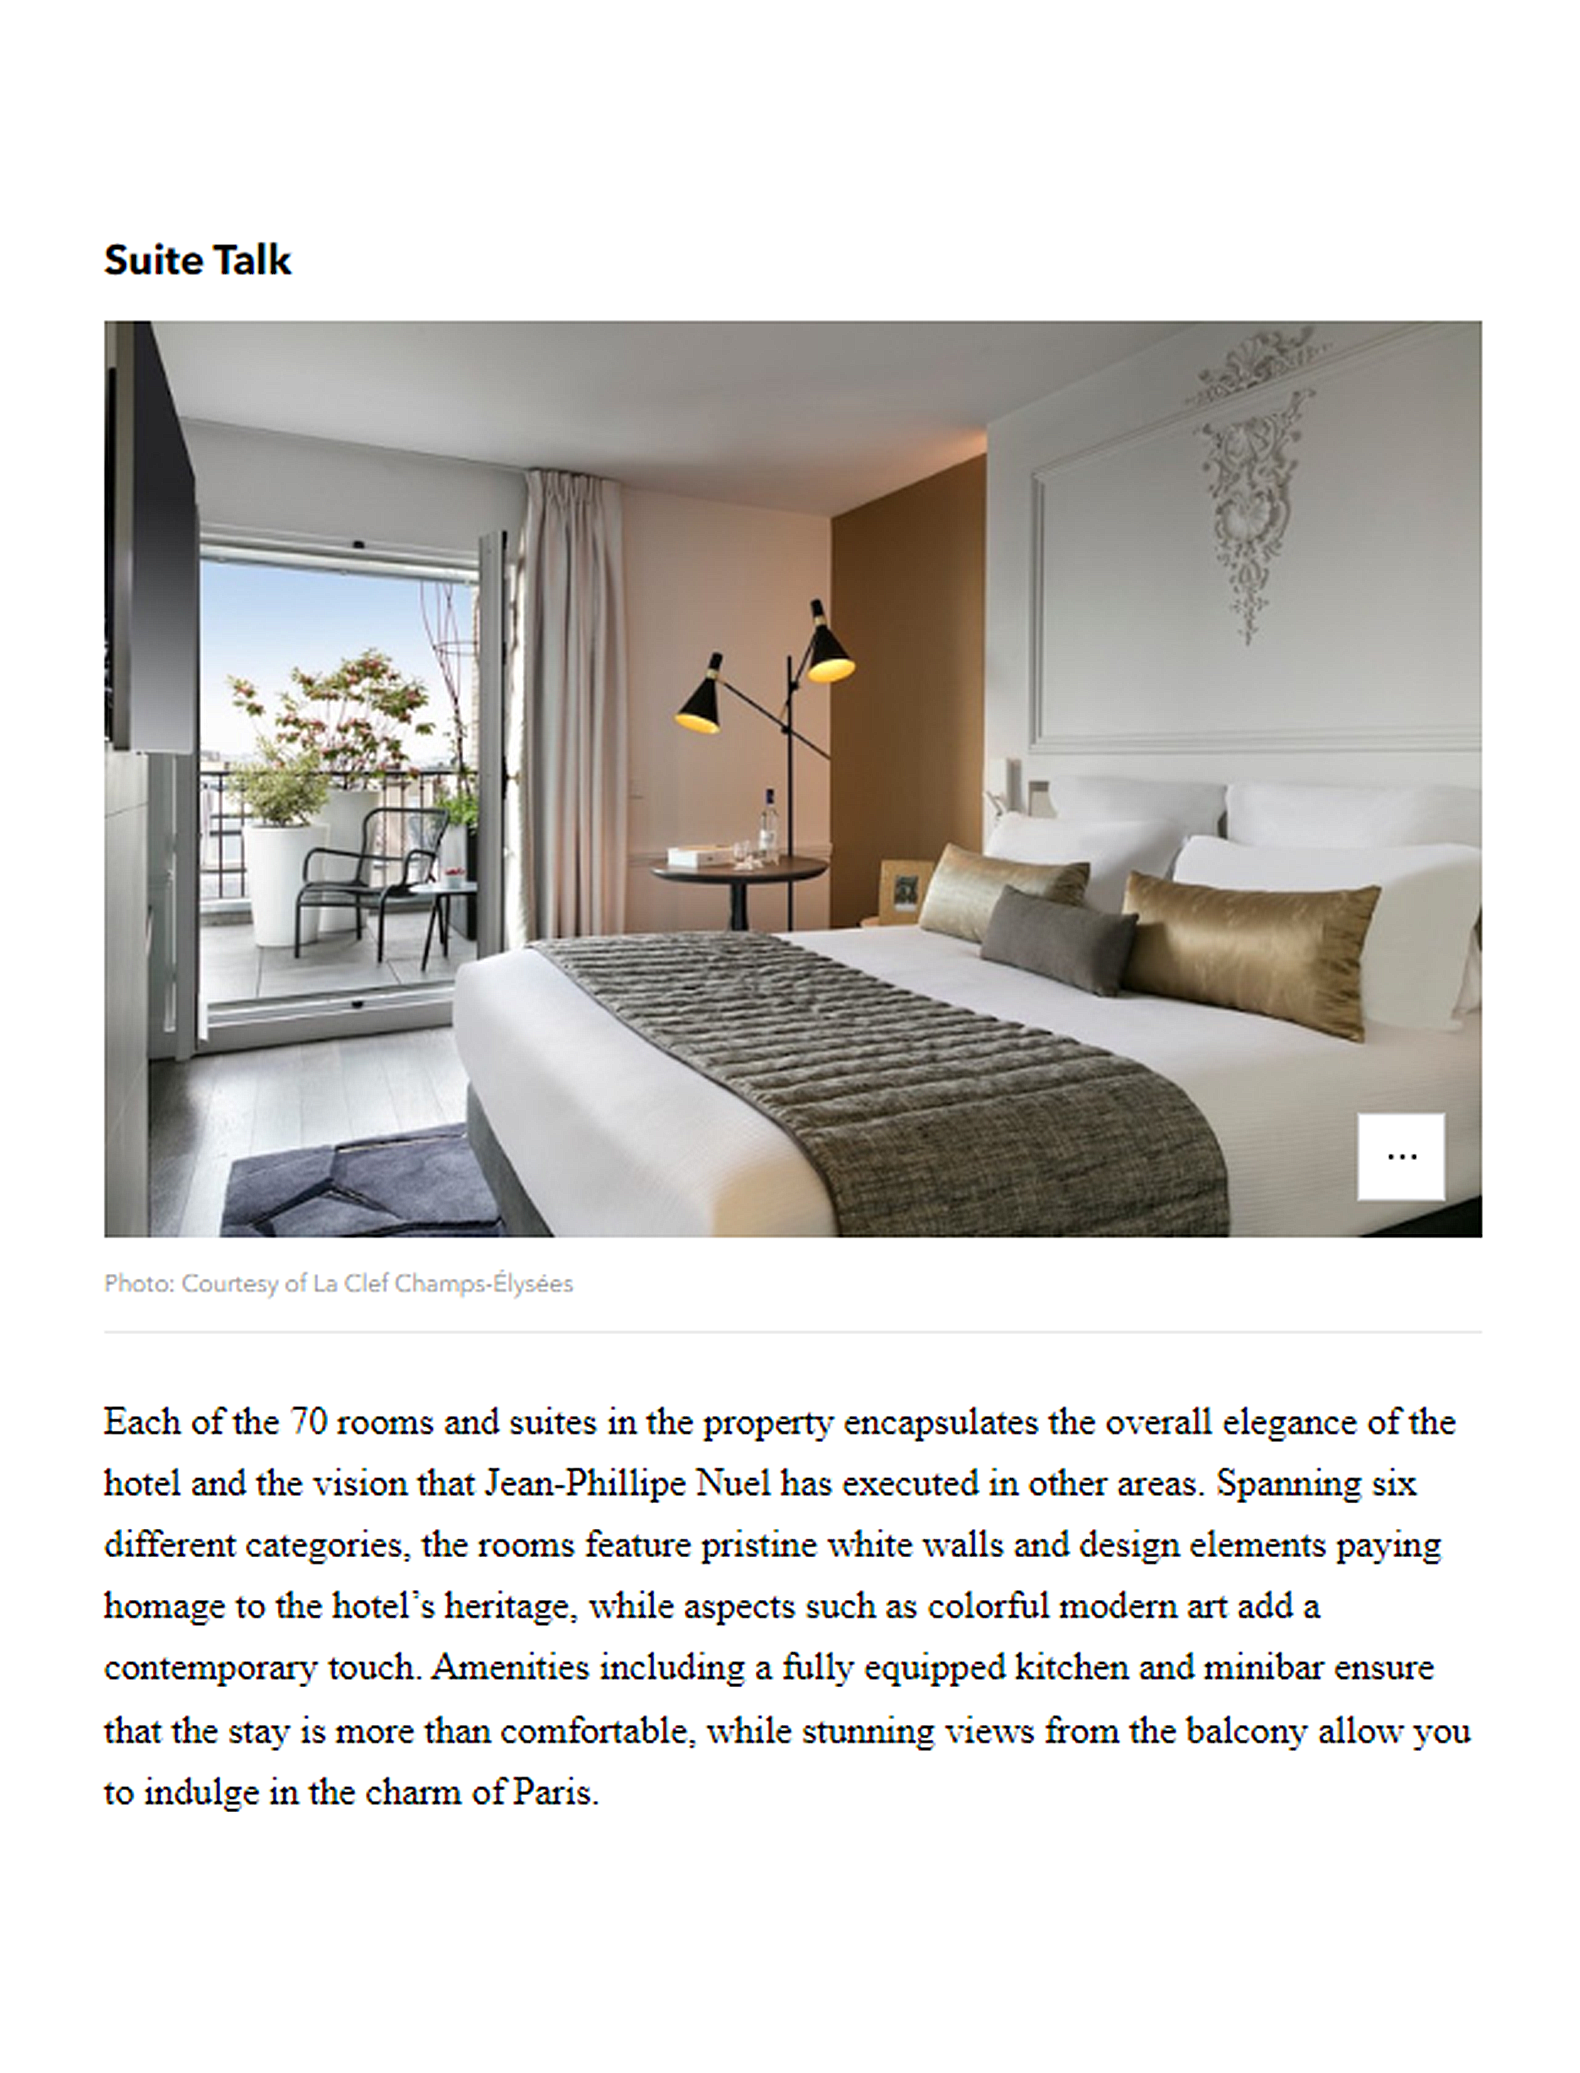 Article de Vogue Arabia sur le l'hôtel La Clef Champs-Elysées